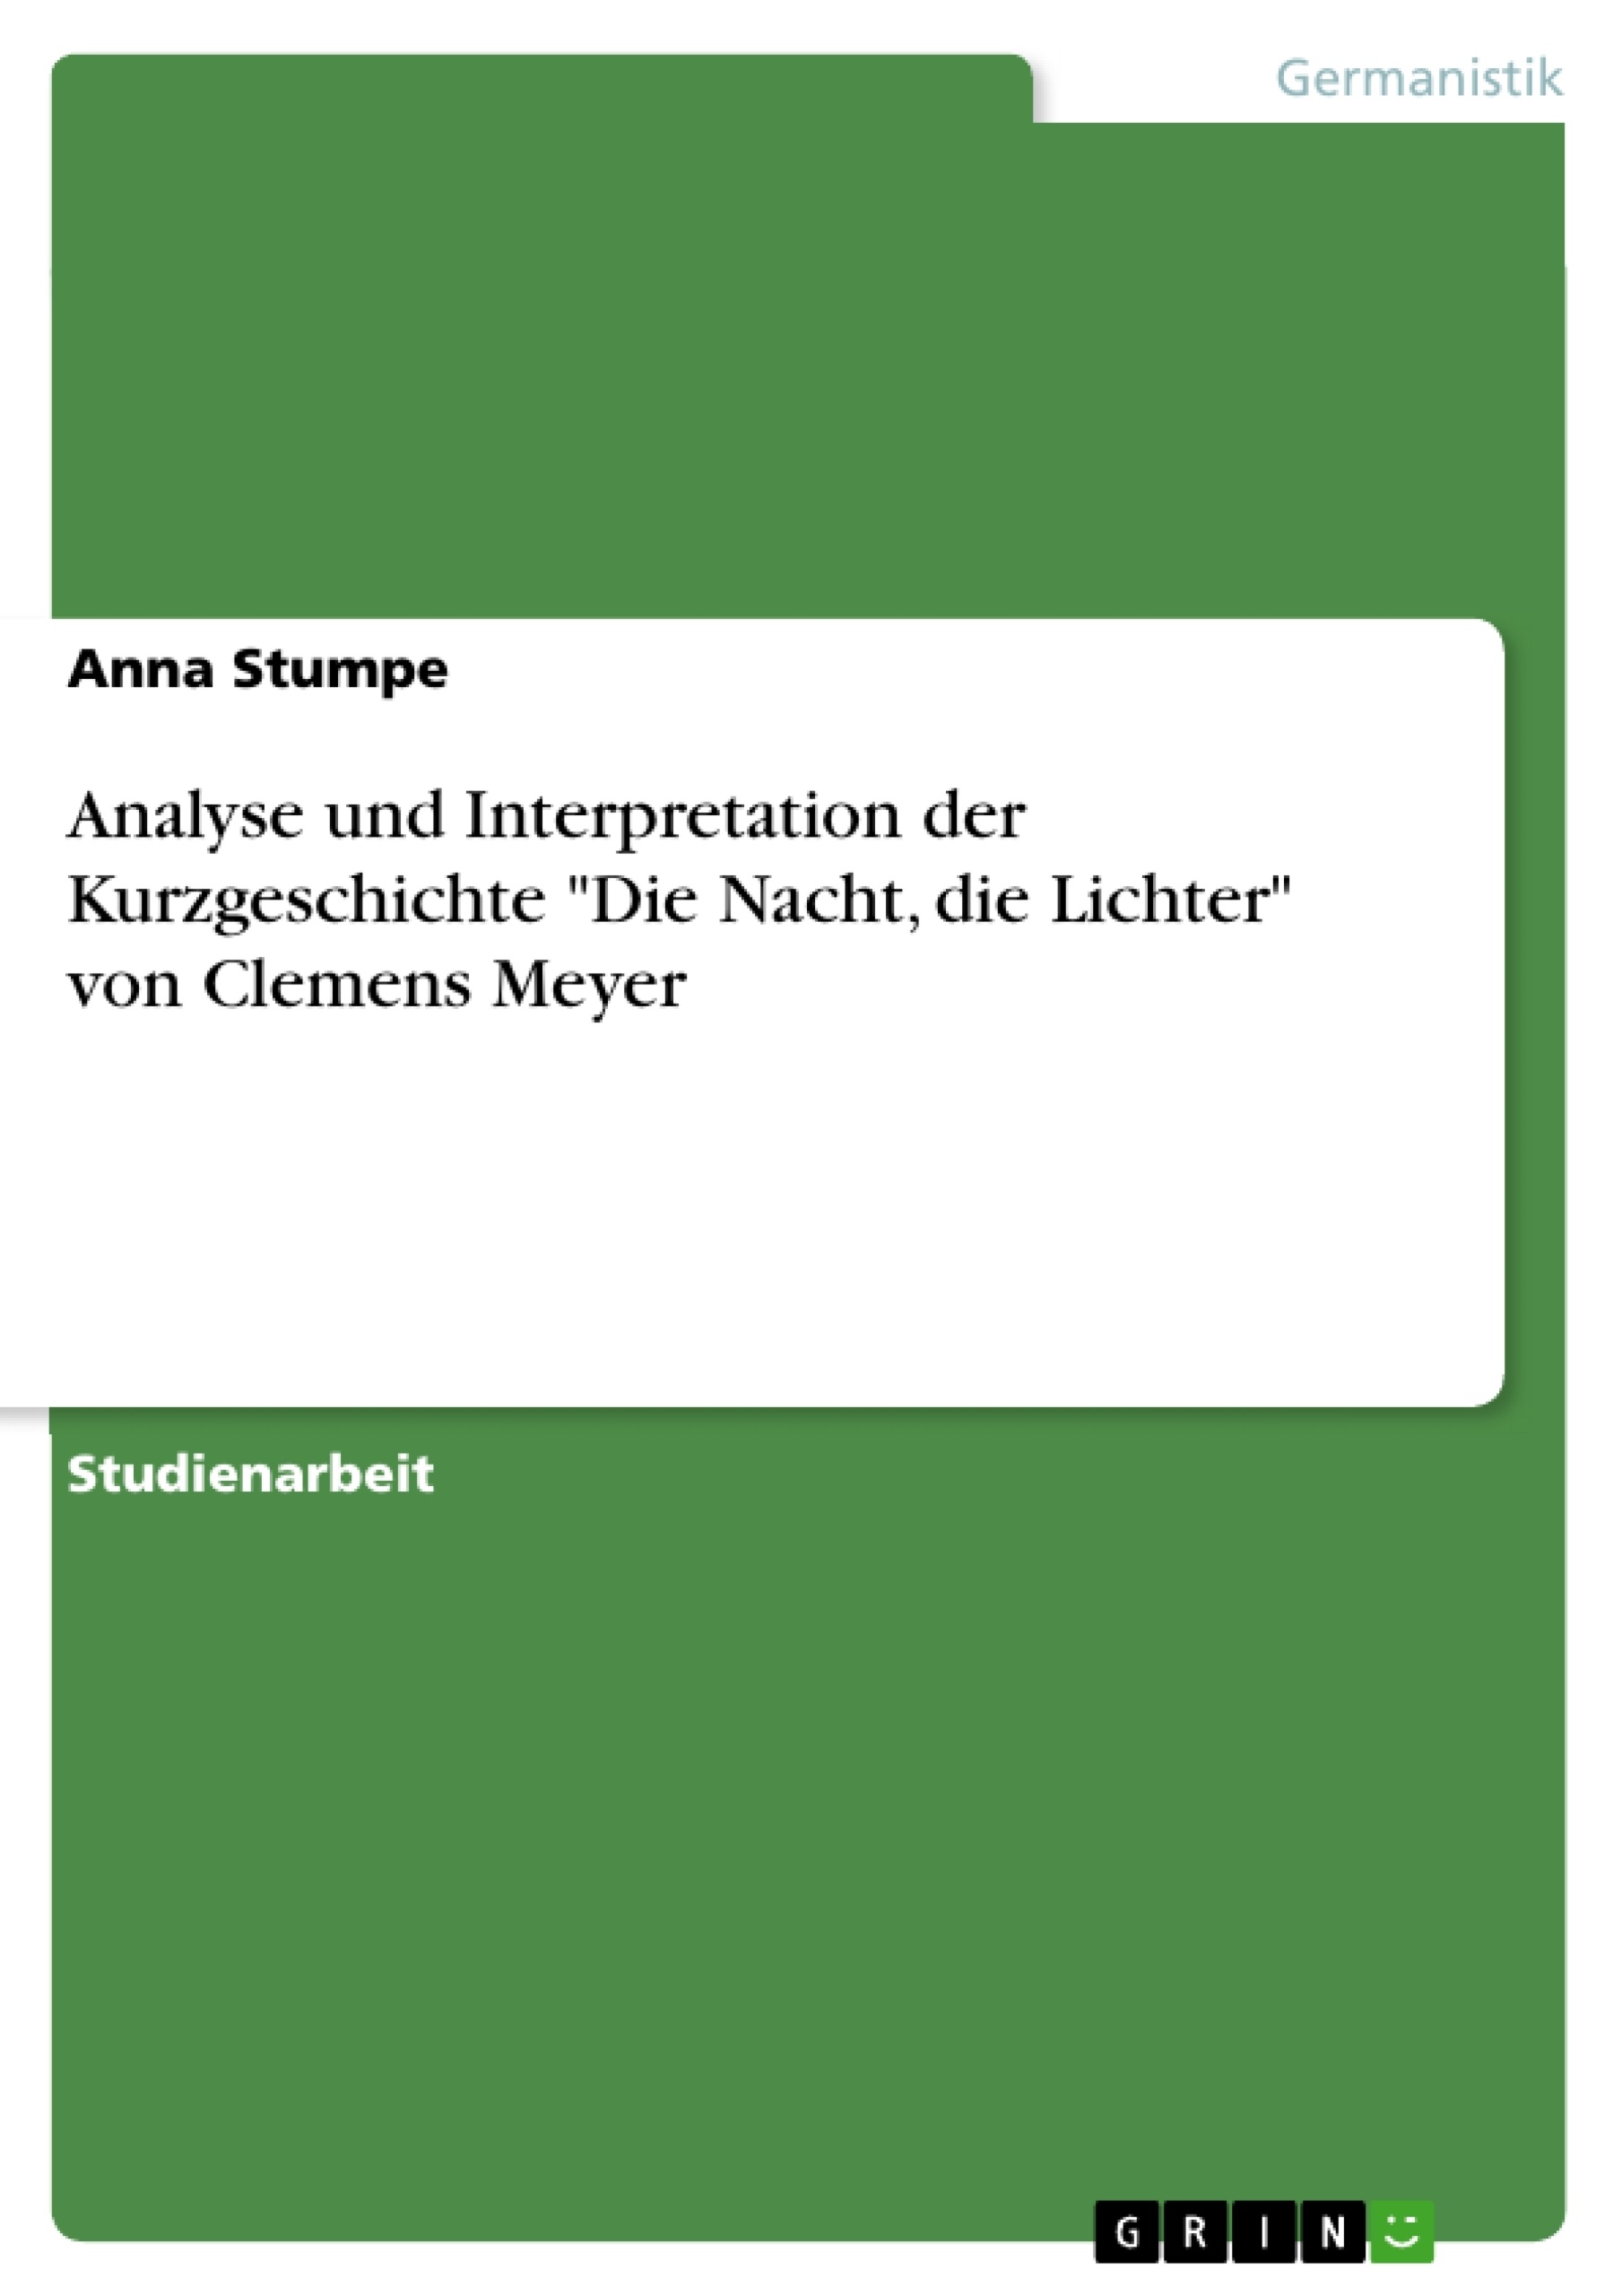 Title: Analyse und Interpretation der Kurzgeschichte "Die Nacht, die Lichter" von Clemens Meyer